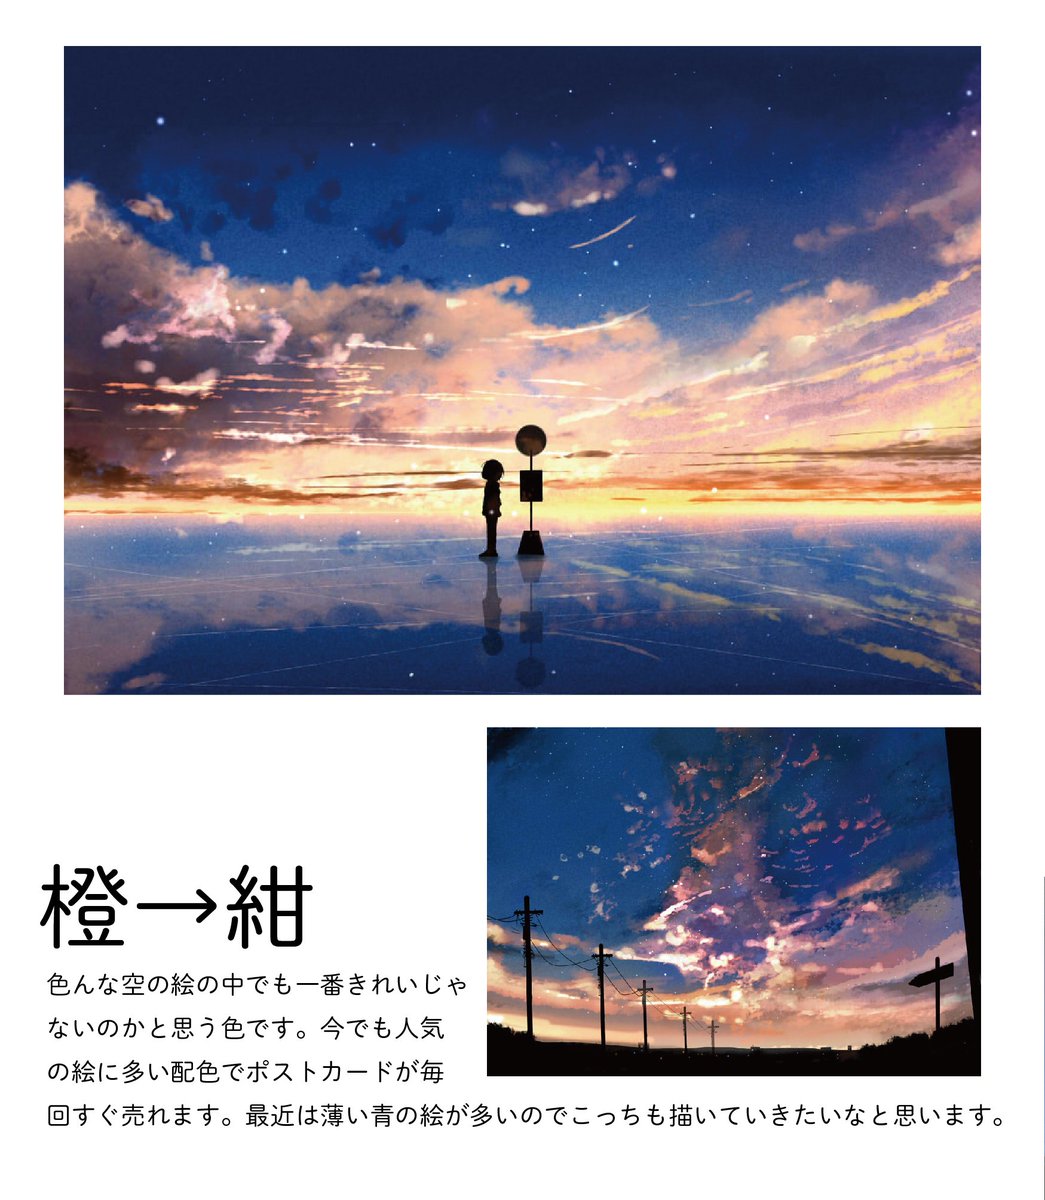 桜田千尋 満月珈琲店の星詠み2巻2月9日発売 Auf Twitter 自分の夕焼けのイラストを色ごとに分けてみました 夕焼けイラストは変化する空 のグラデーション作るのが楽しいです 好きな空の色 ありますか 今後のグッズなどの参考にします